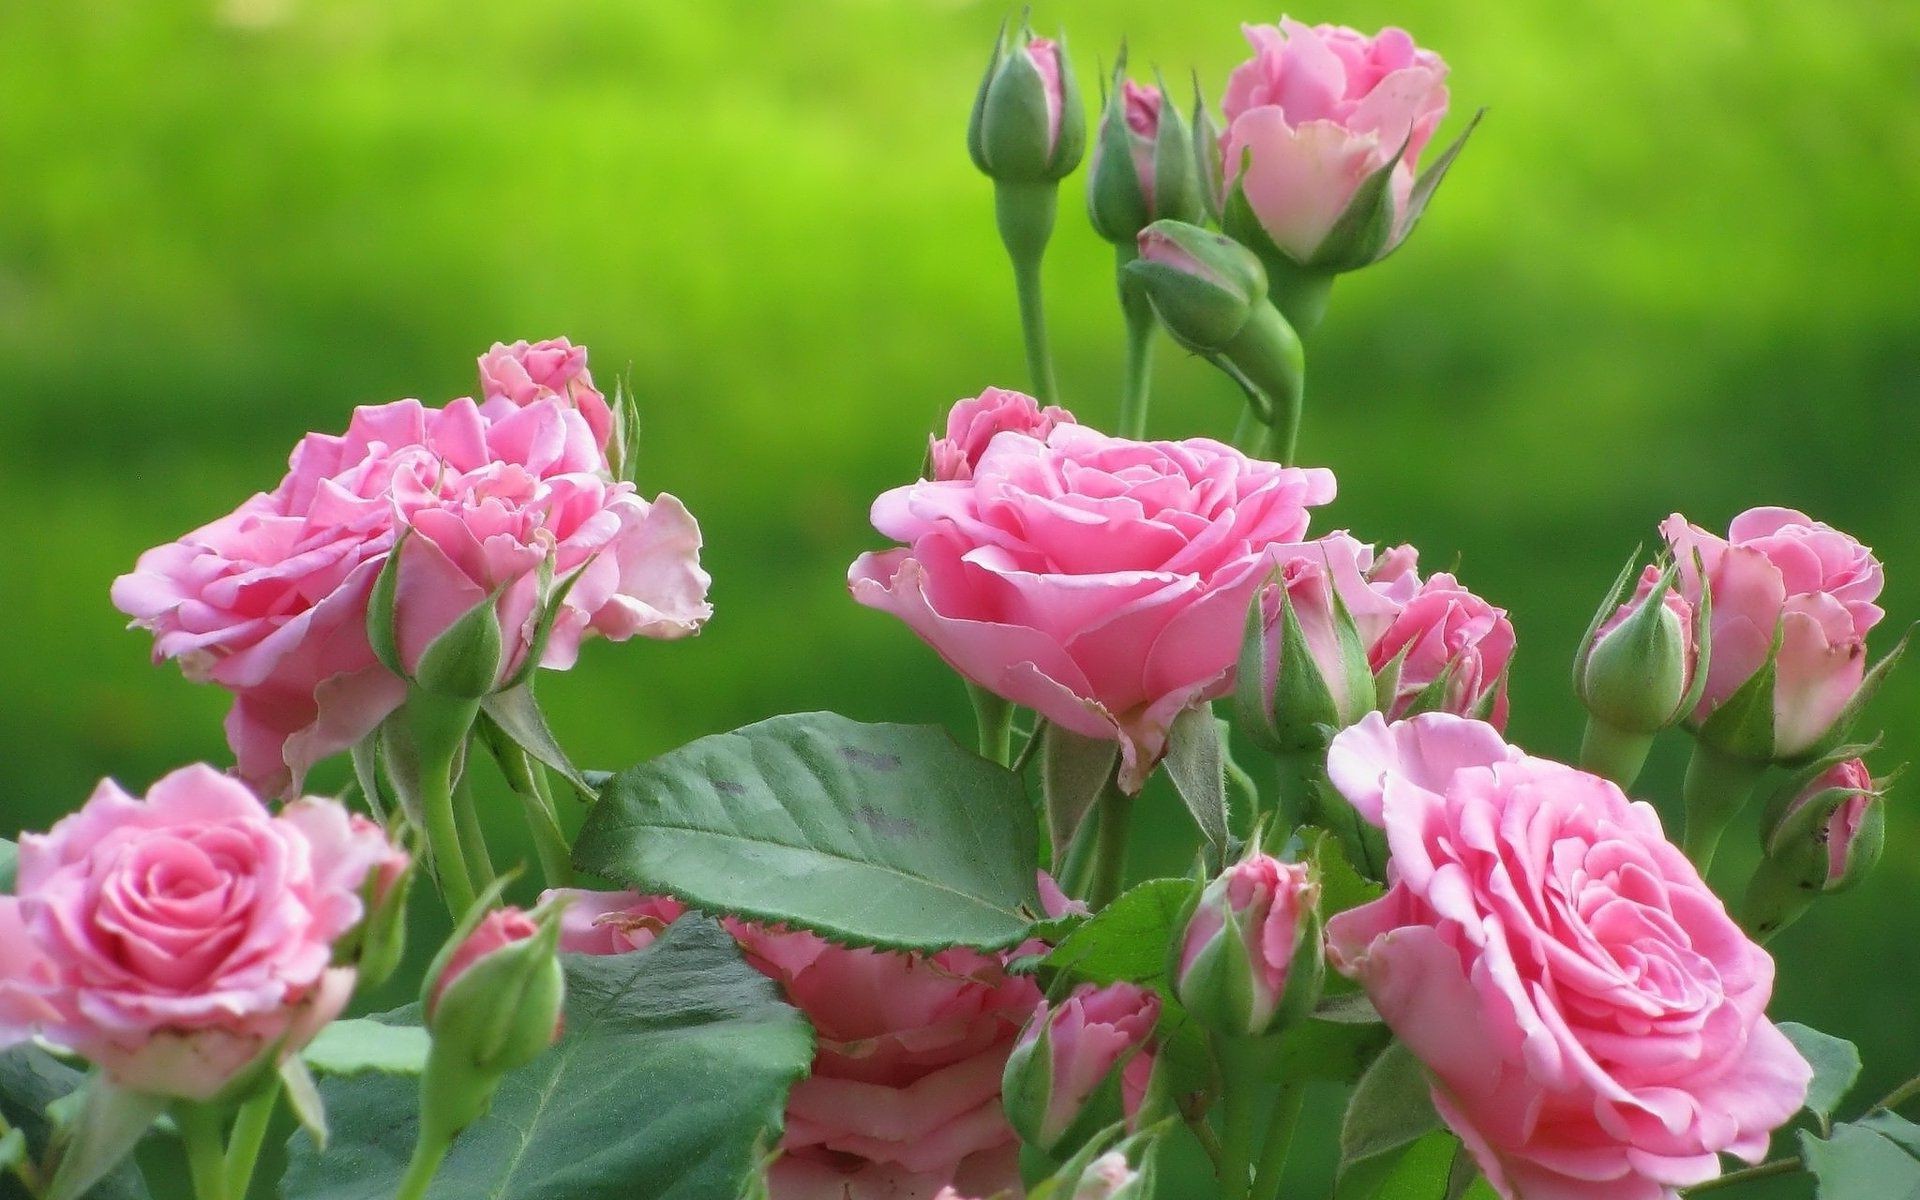 розы цветок флора природа лепесток цветочные лист блюминг сад букет любовь лето романтика цвет романтический дружище яркий кластер